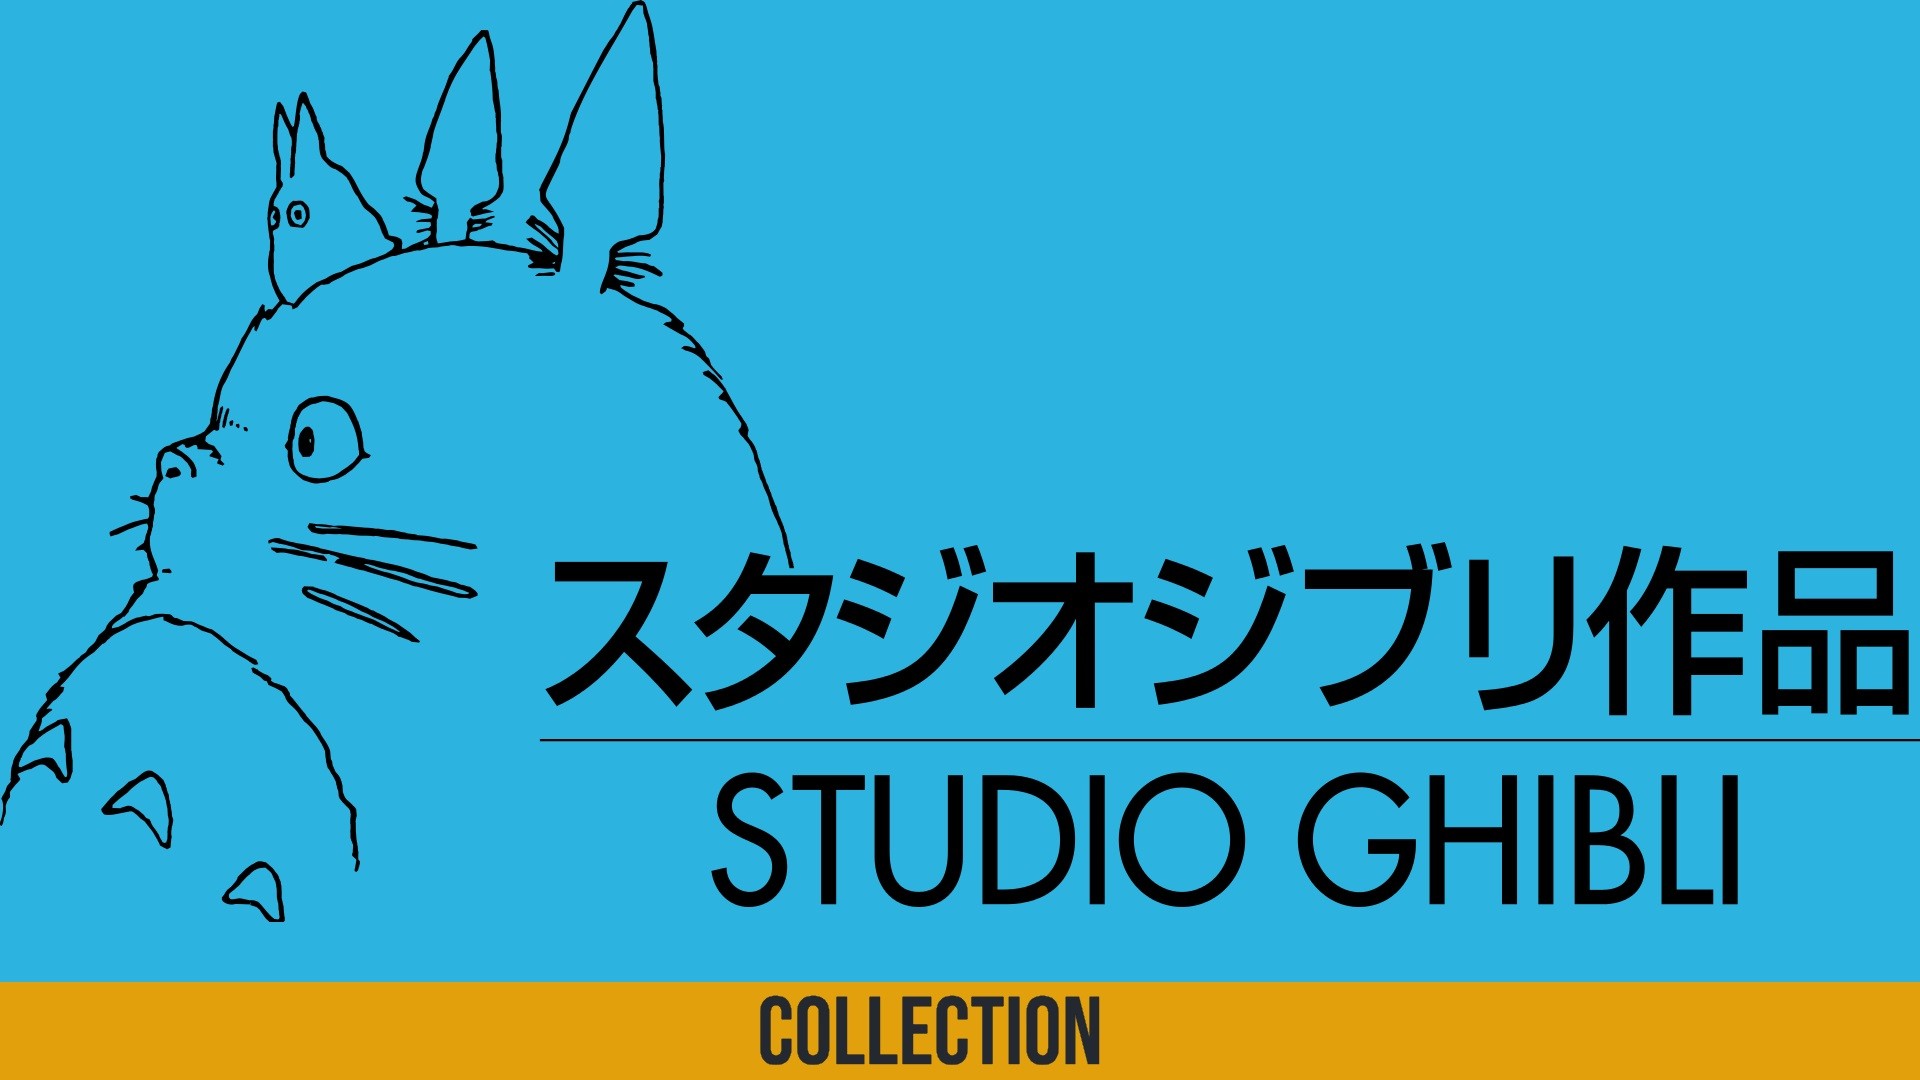 Studio Ghibli 19x1080 Wallpaper Teahub Io